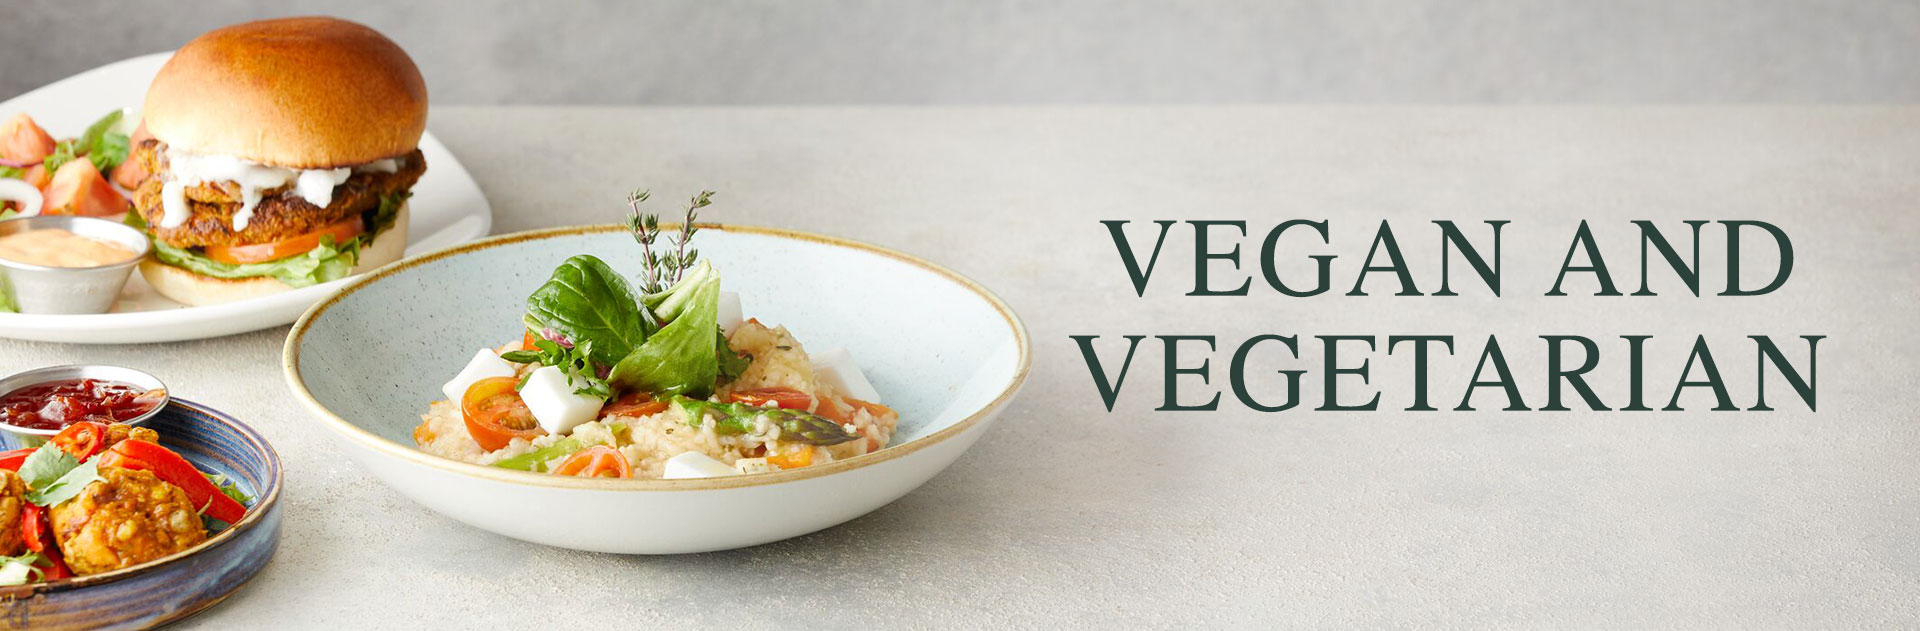 Vegan & Vegetarian Menu